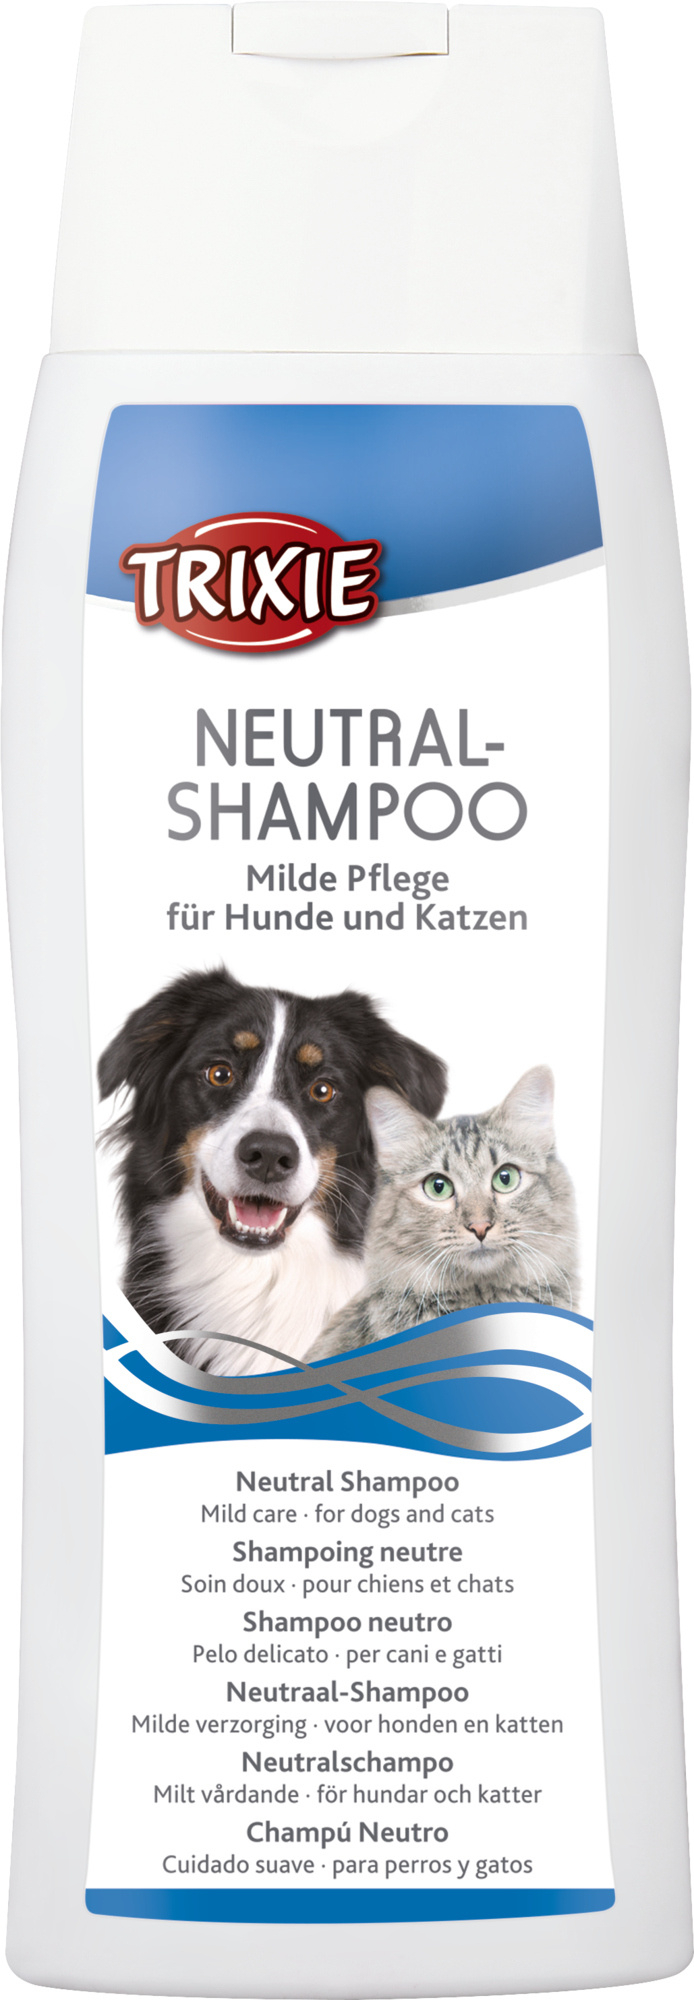 Neutral-Shampoo